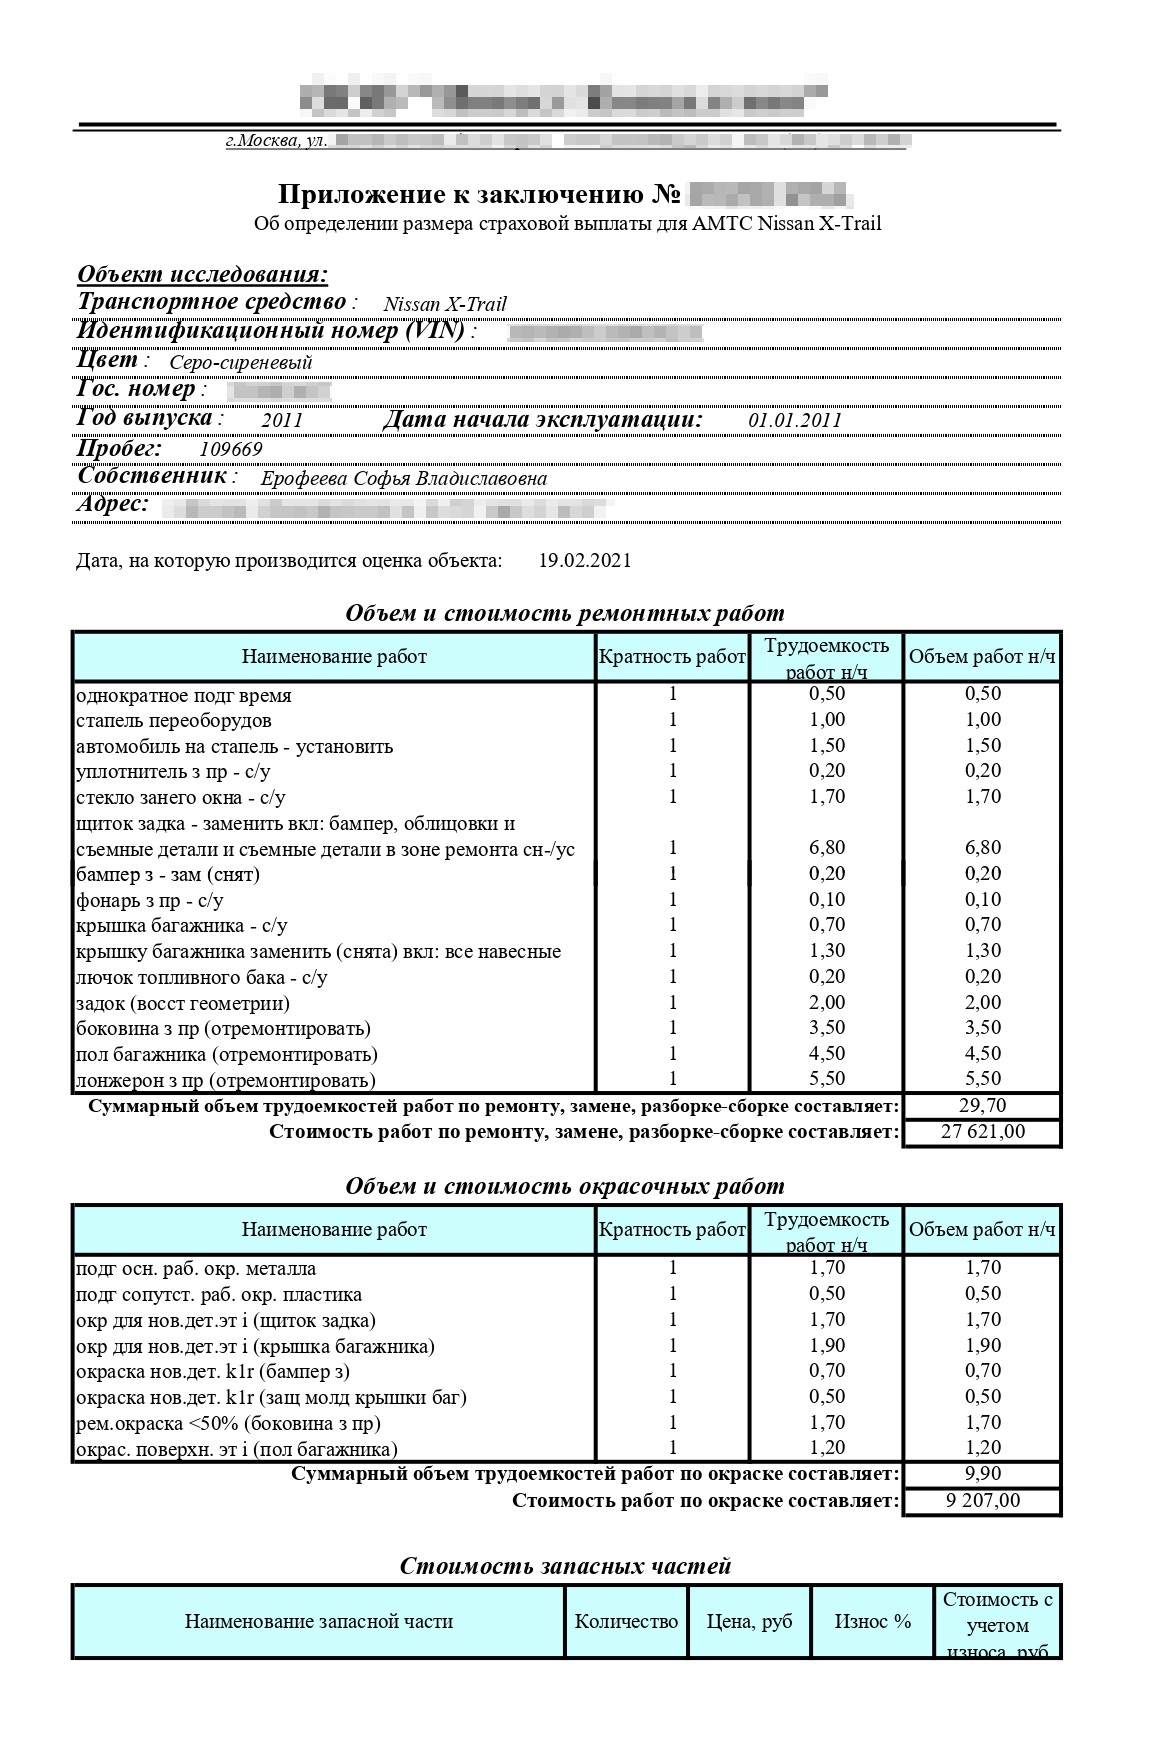 Как я избежал оплаты ремонта по ОСАГО после получения некачественного сервиса и получил взамен 93 374 руб